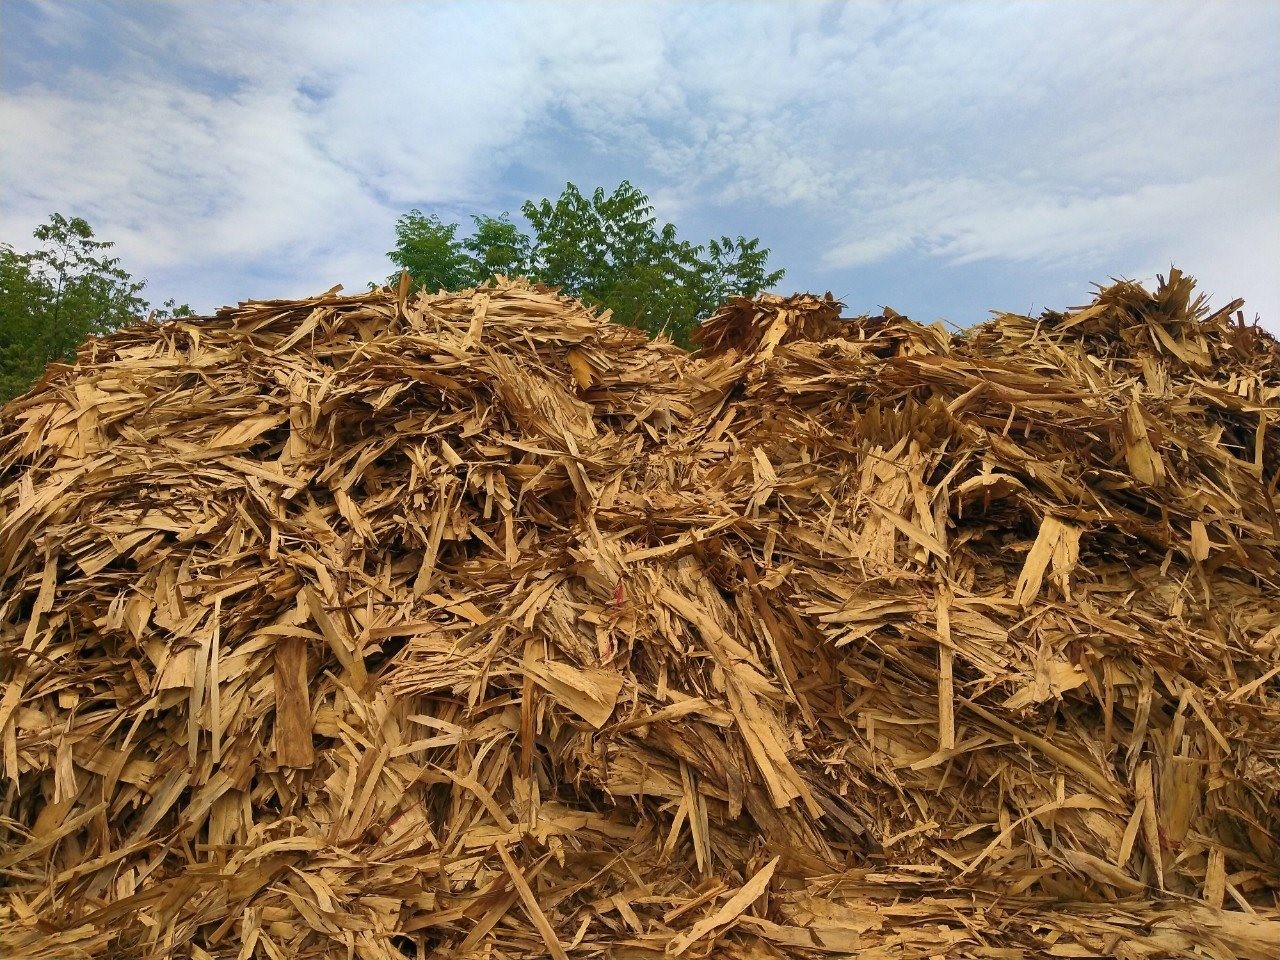 
Phần lớn viên nén gỗ được làm từ phụ phẩm của ngành lâm nghiệp như ngọn, cành, bìa bắp, vỏ bào, mùn cưa, gỗ vụn.
